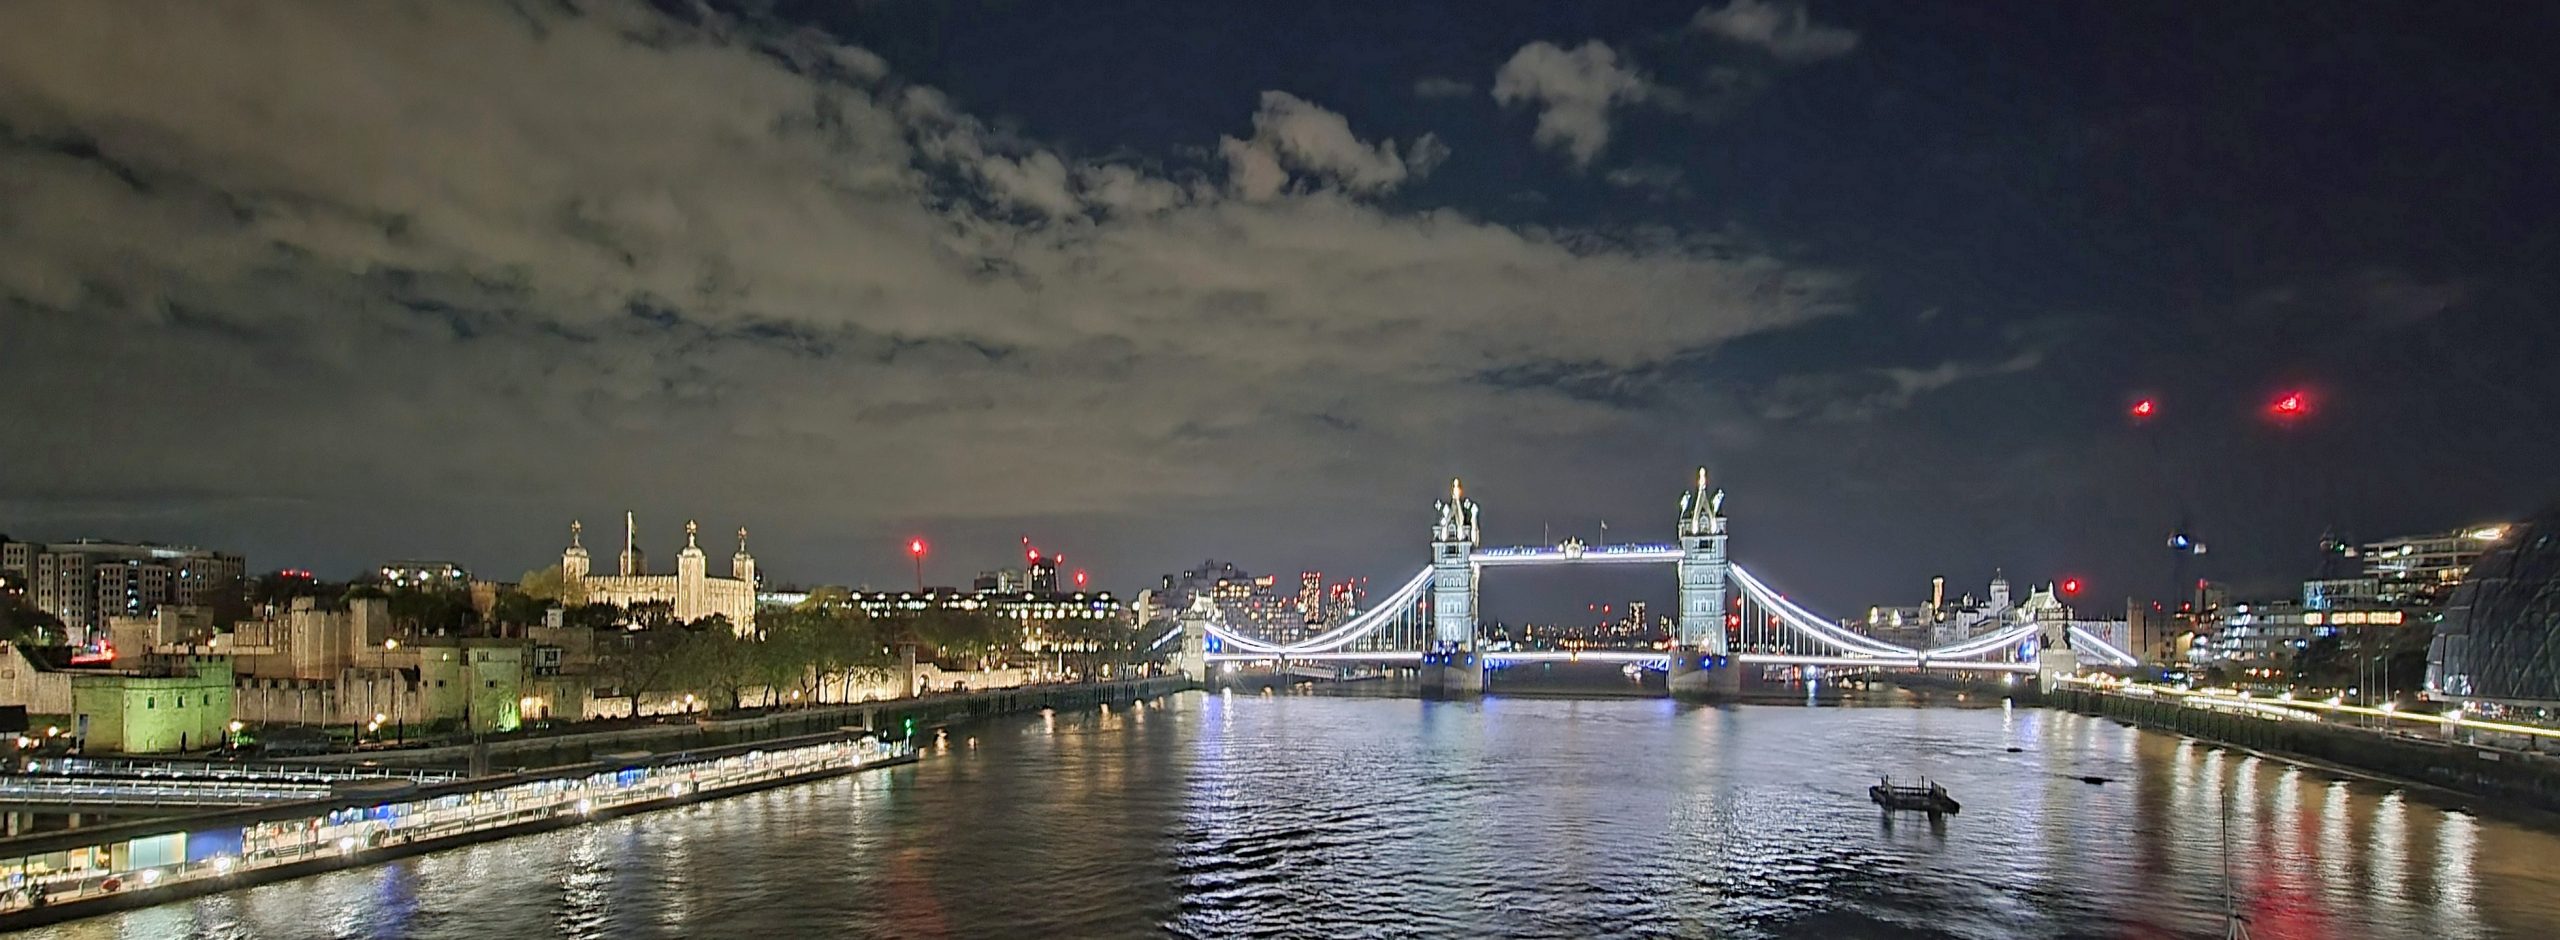 Die Tower Bridge bei Nacht in London